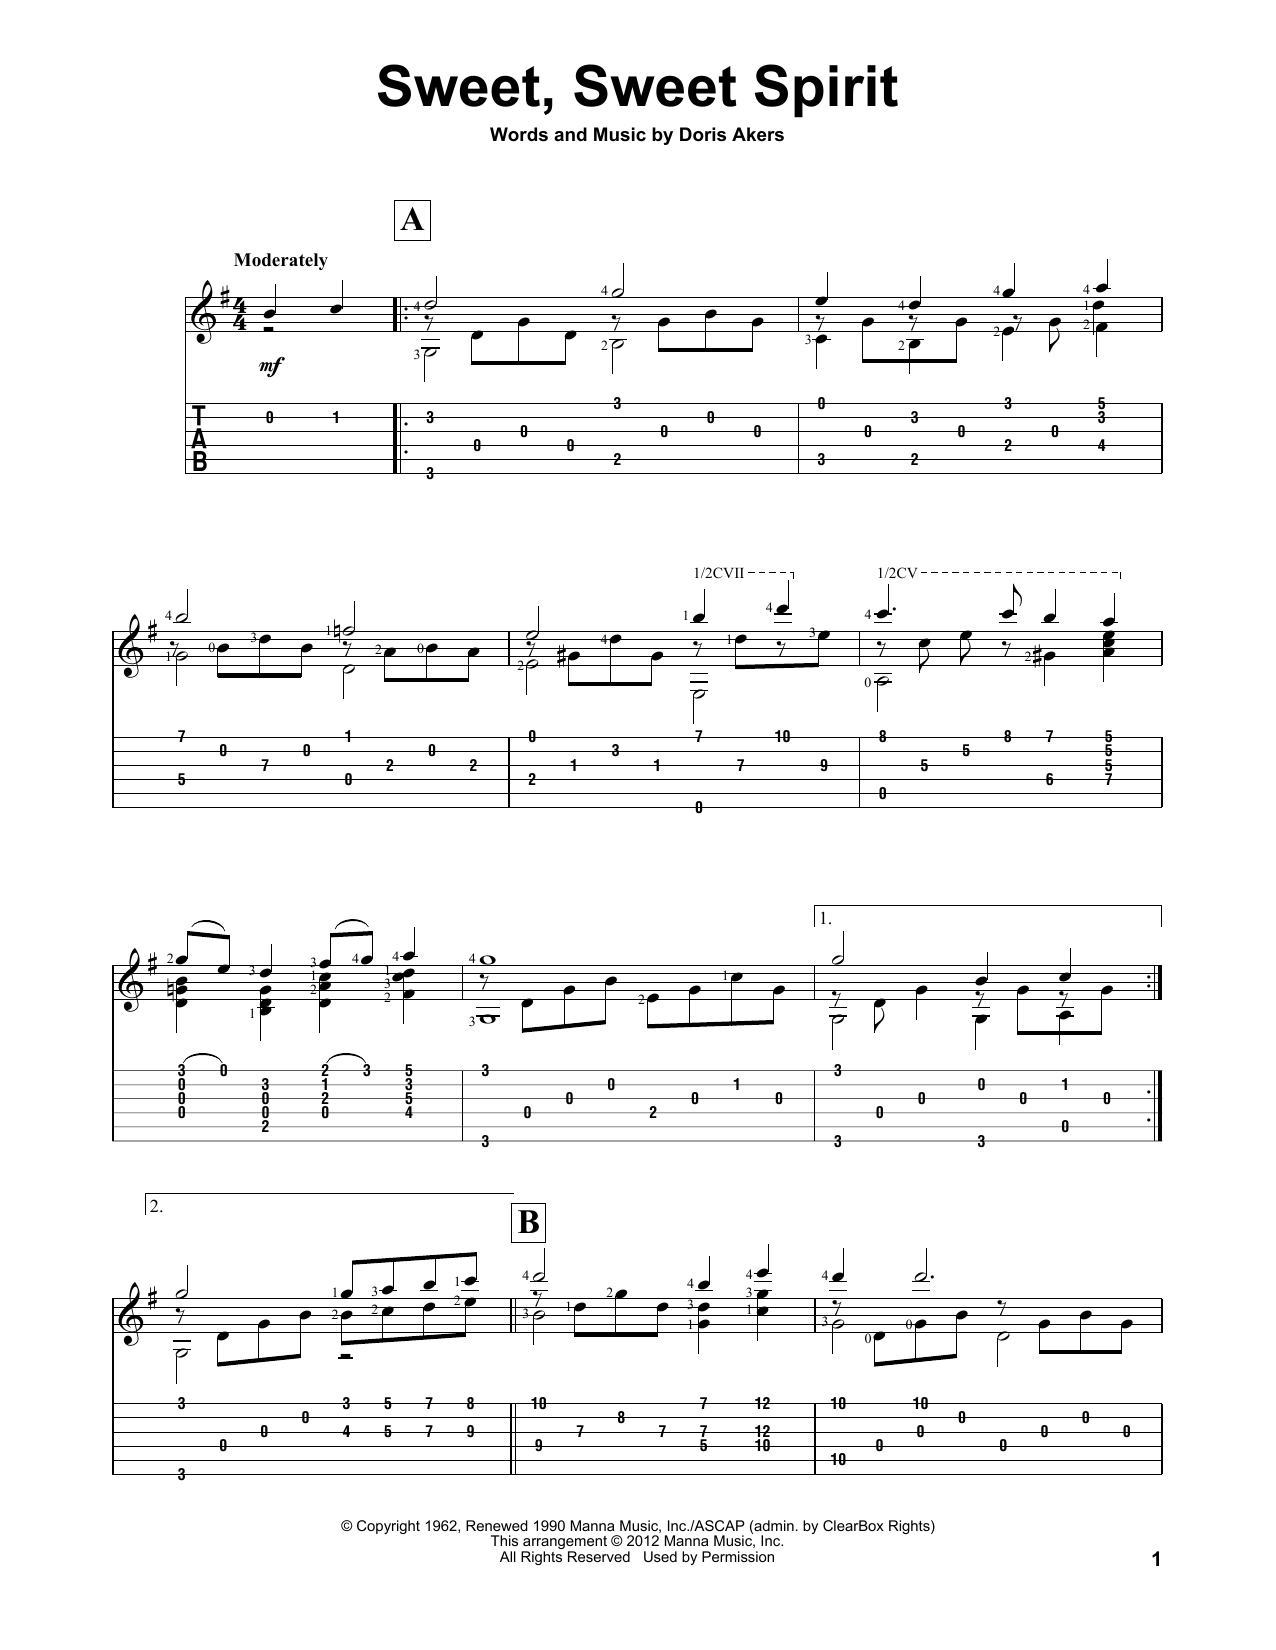 Doris Akers Sweet, Sweet Spirit Sheet Music Notes & Chords for Lead Sheet / Fake Book - Download or Print PDF